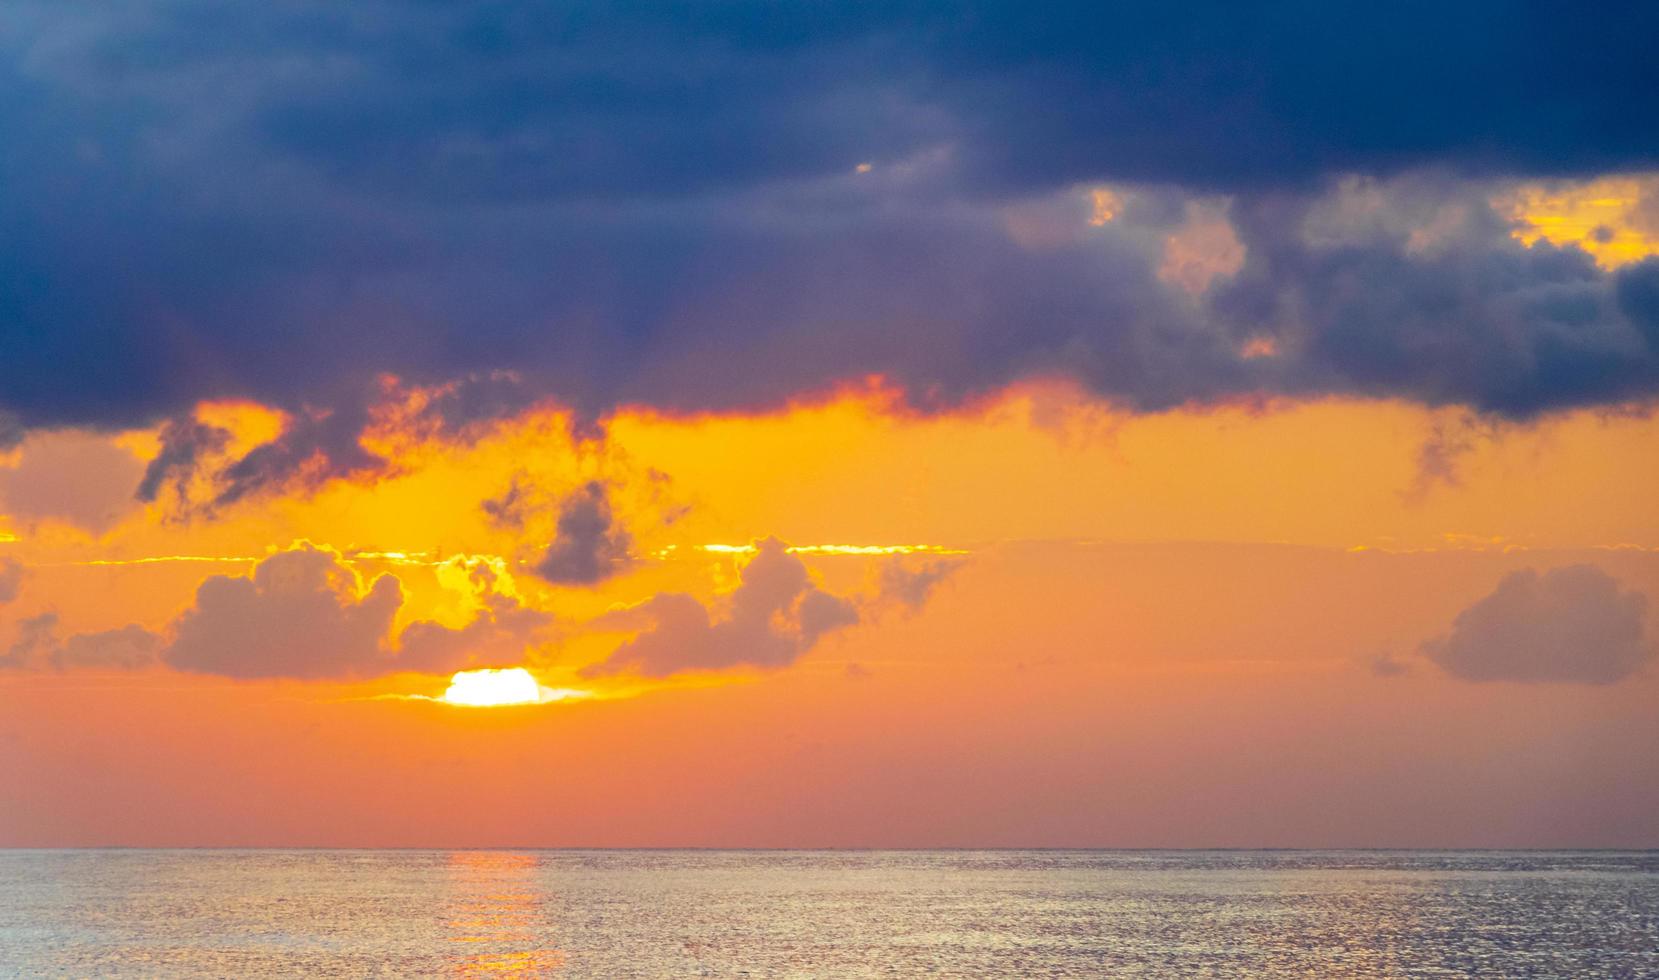 la más hermosa puesta de sol dorada y colorida playa de ialysos rodas grecia. foto